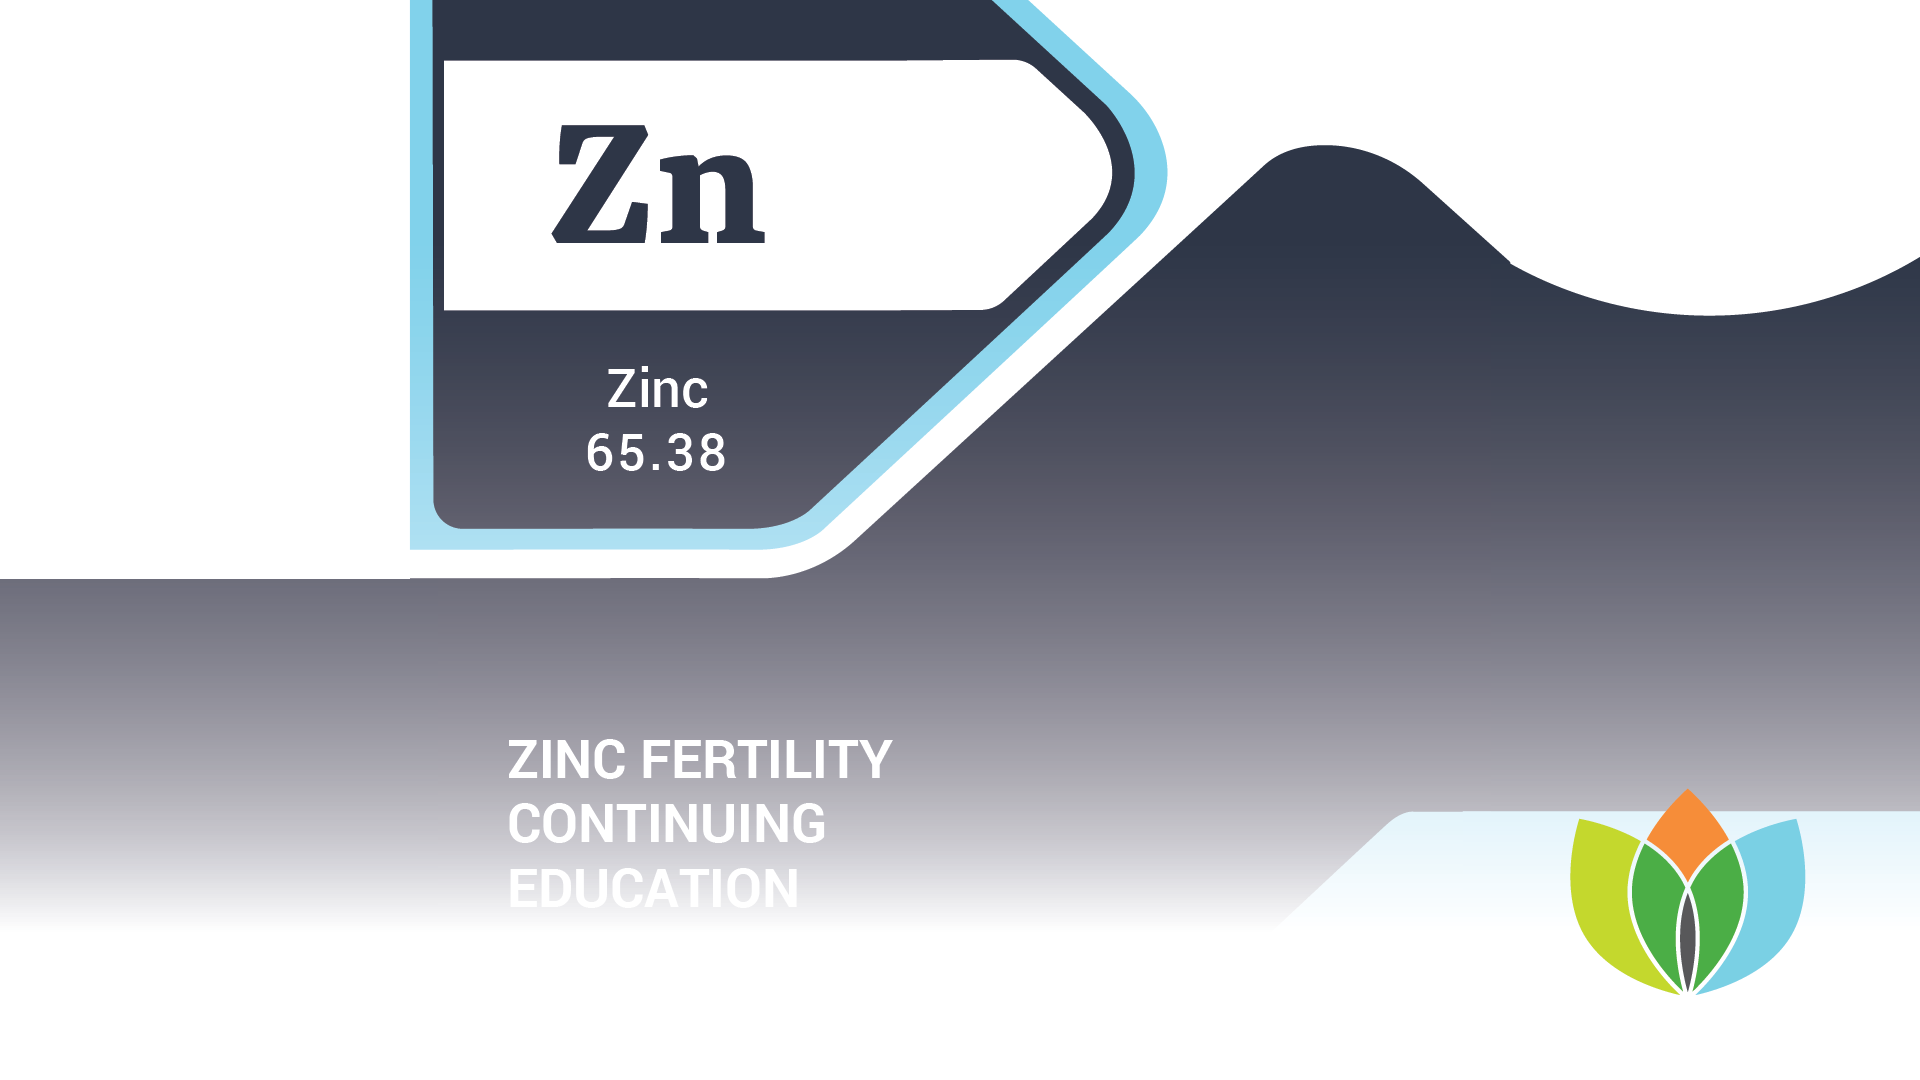 Zinc Fertility